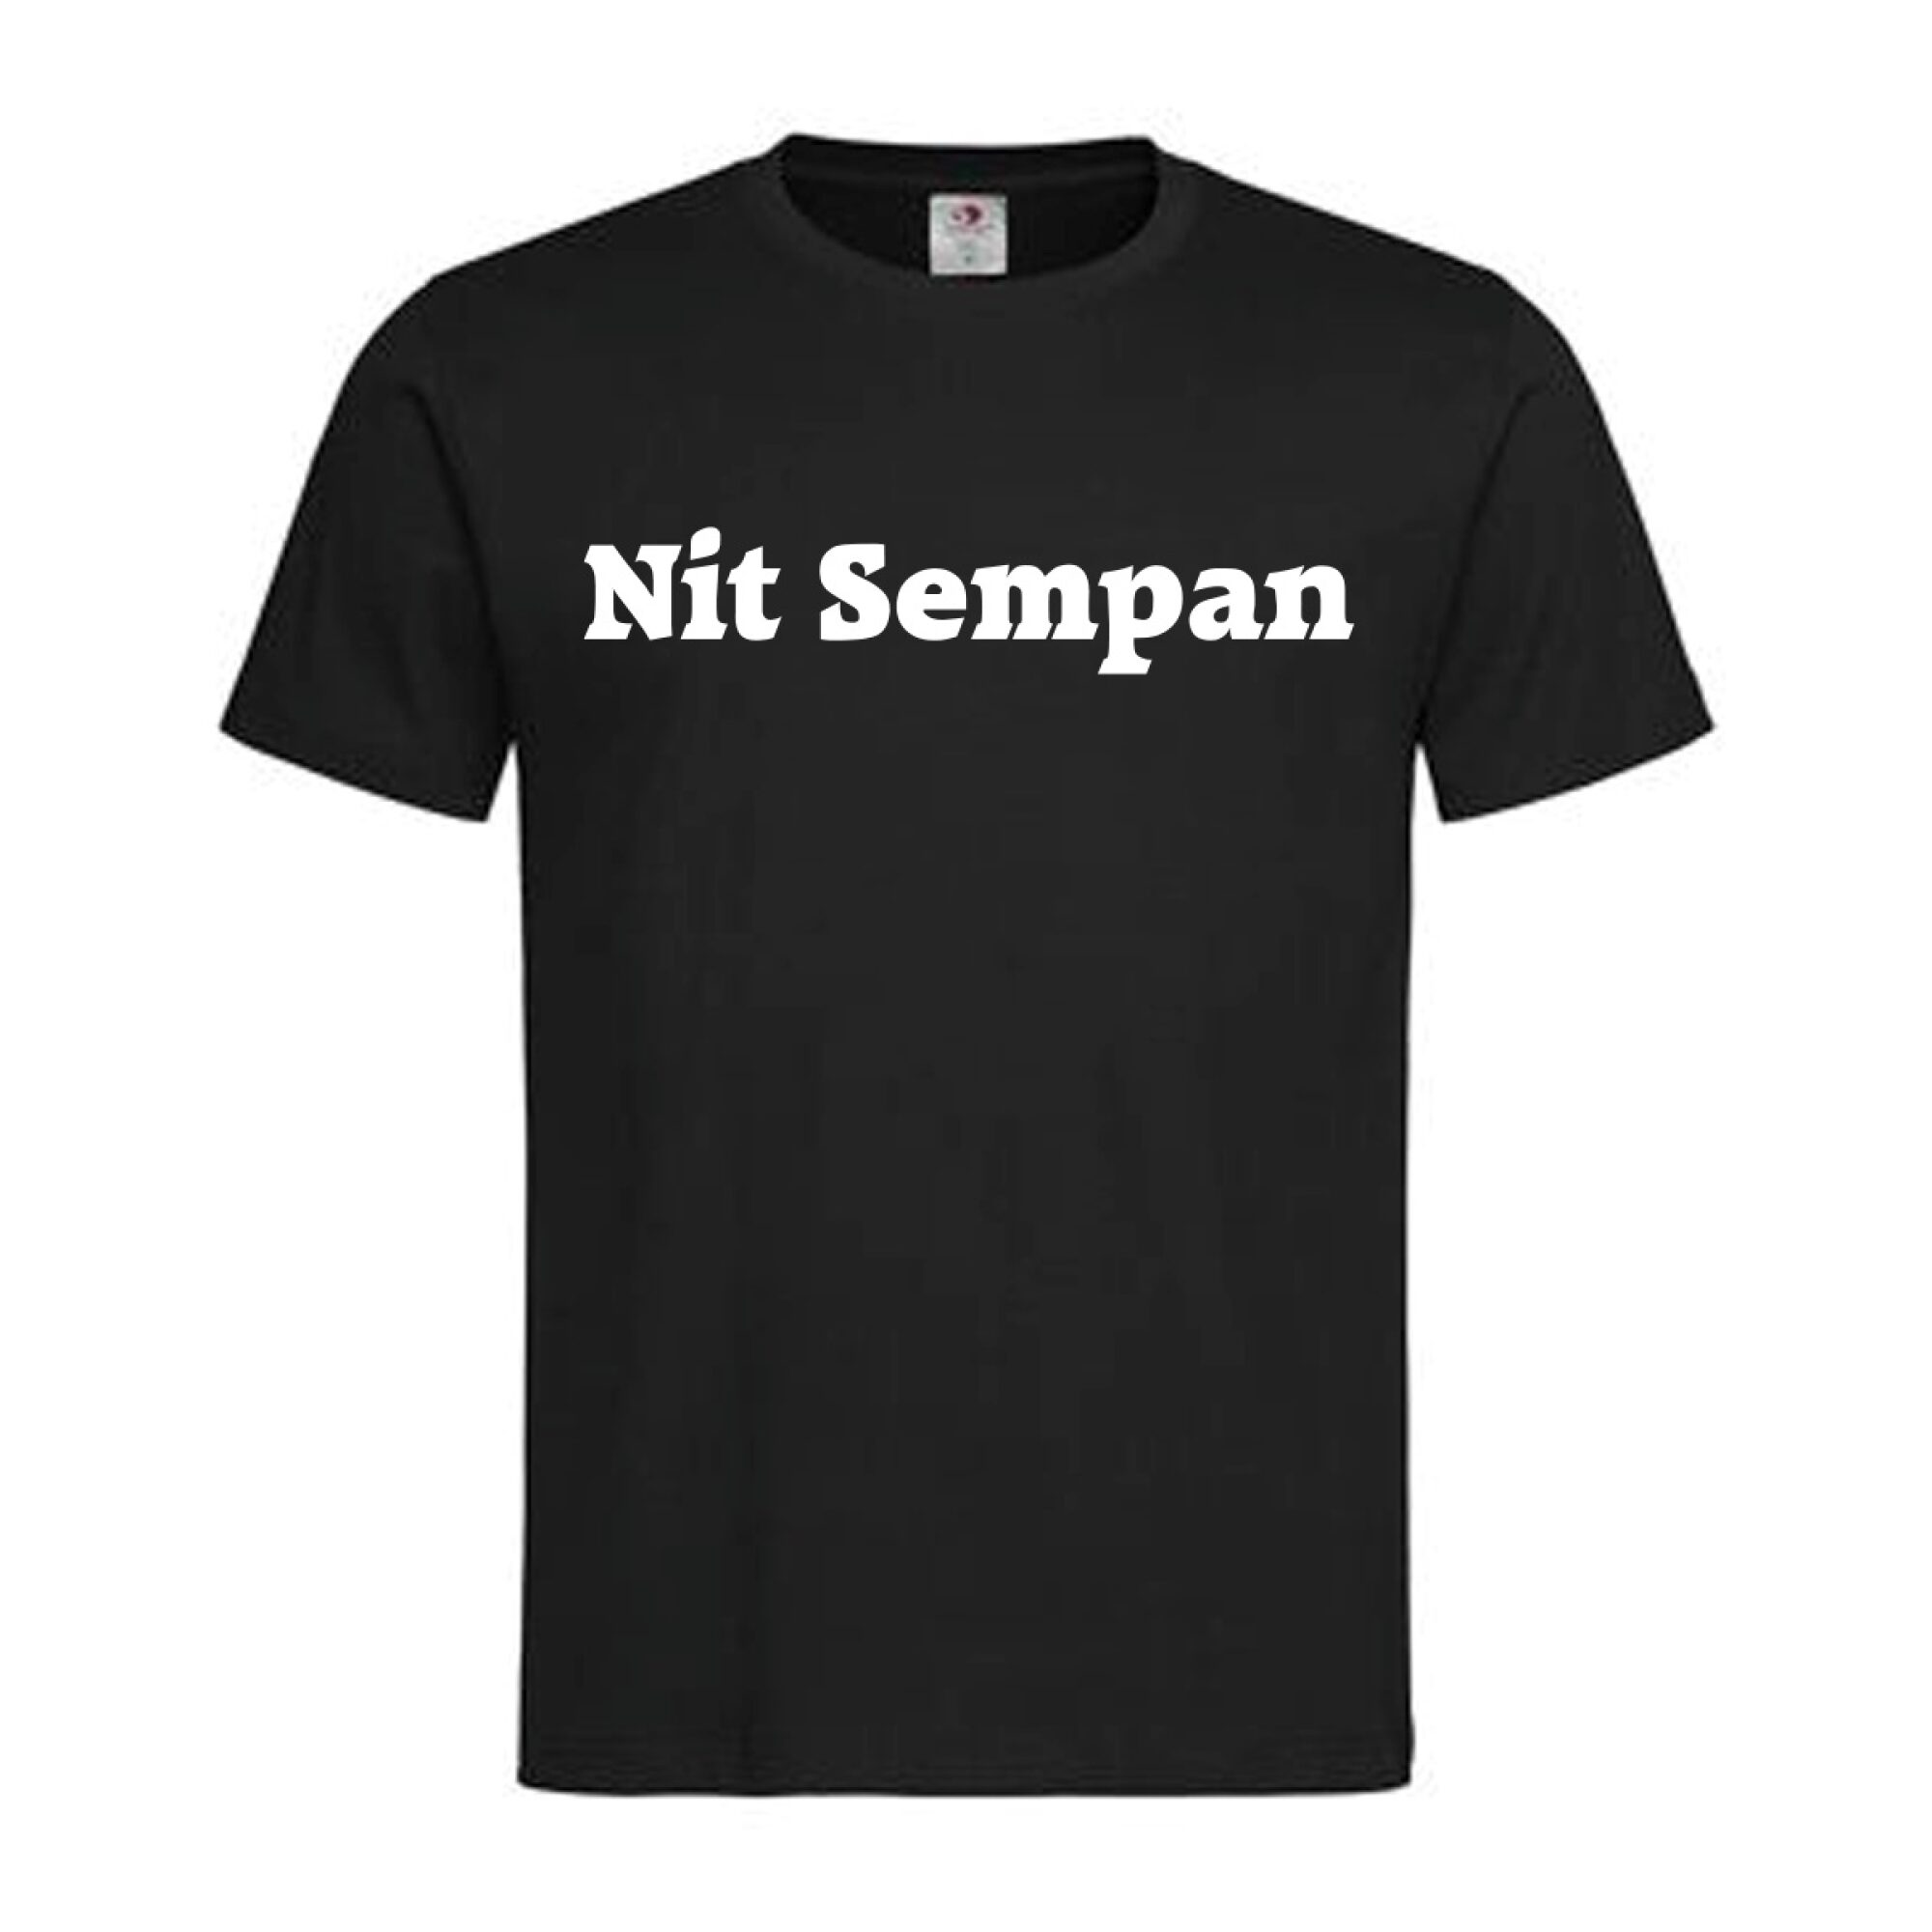 T-Shirt Kärnten Nit Sempan – Österreichische Sprüche